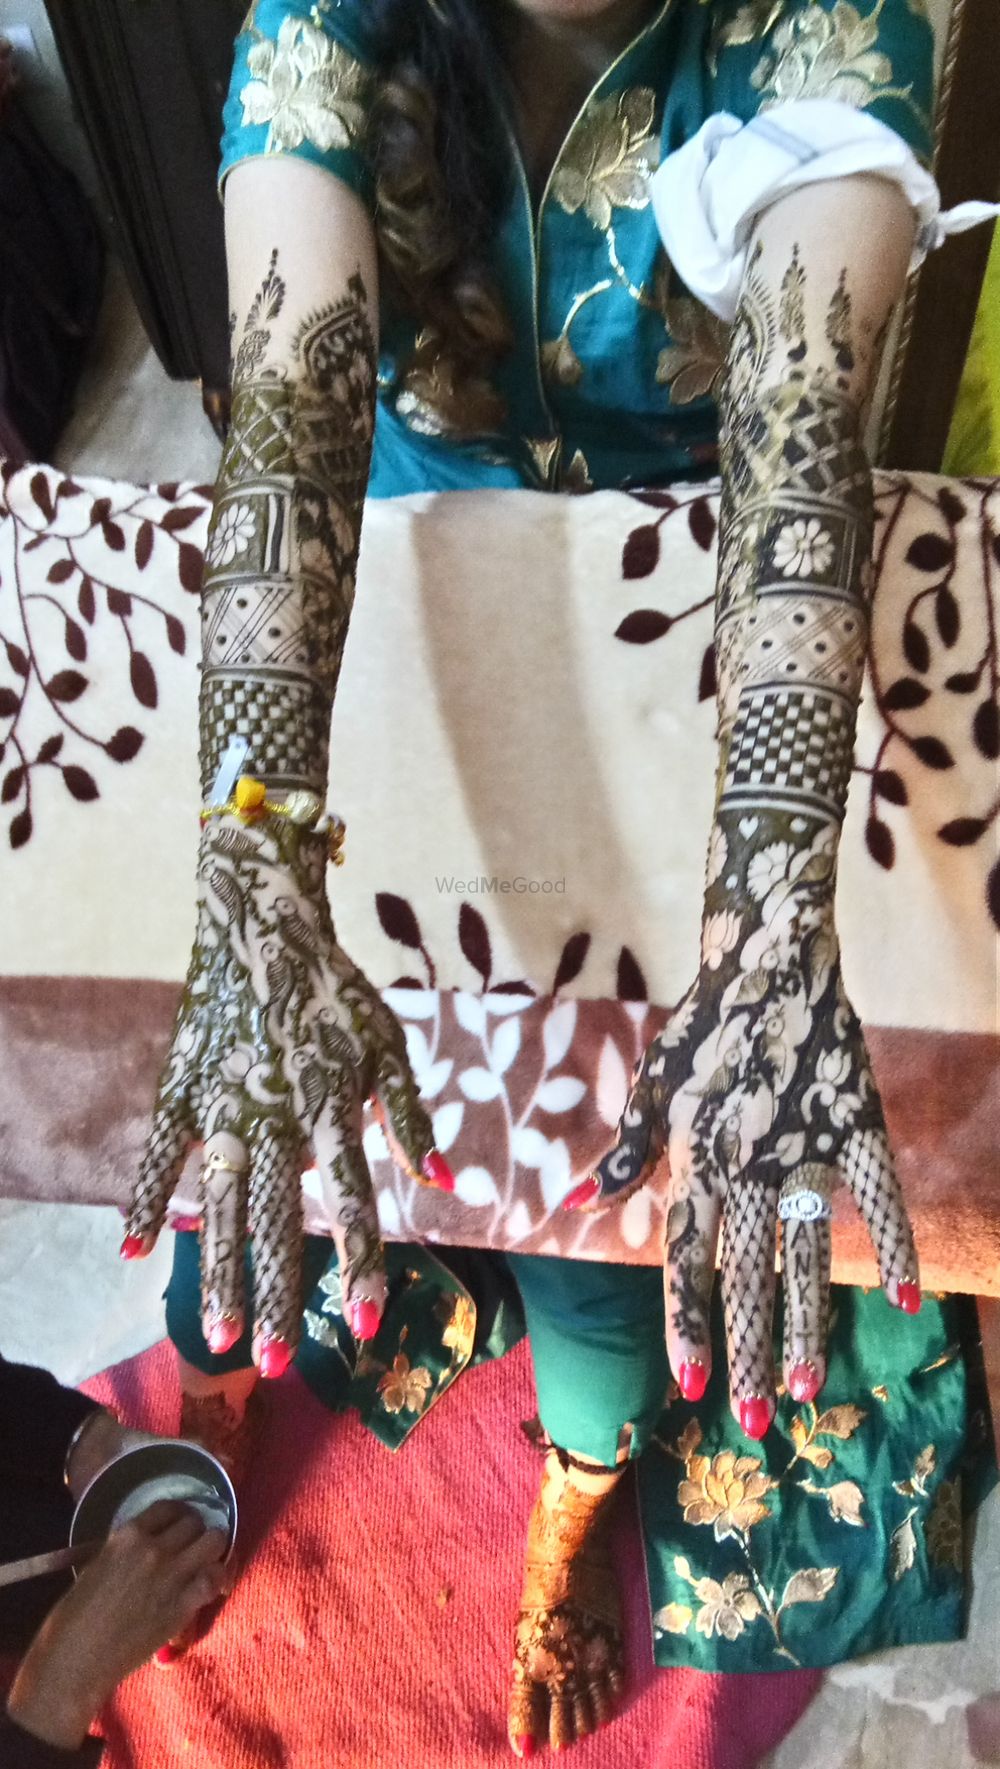 Photo From Vidhi kataria bridal mehendi at gurgaon on 20 Jan 2018 - By Shalini Mehendi Artist